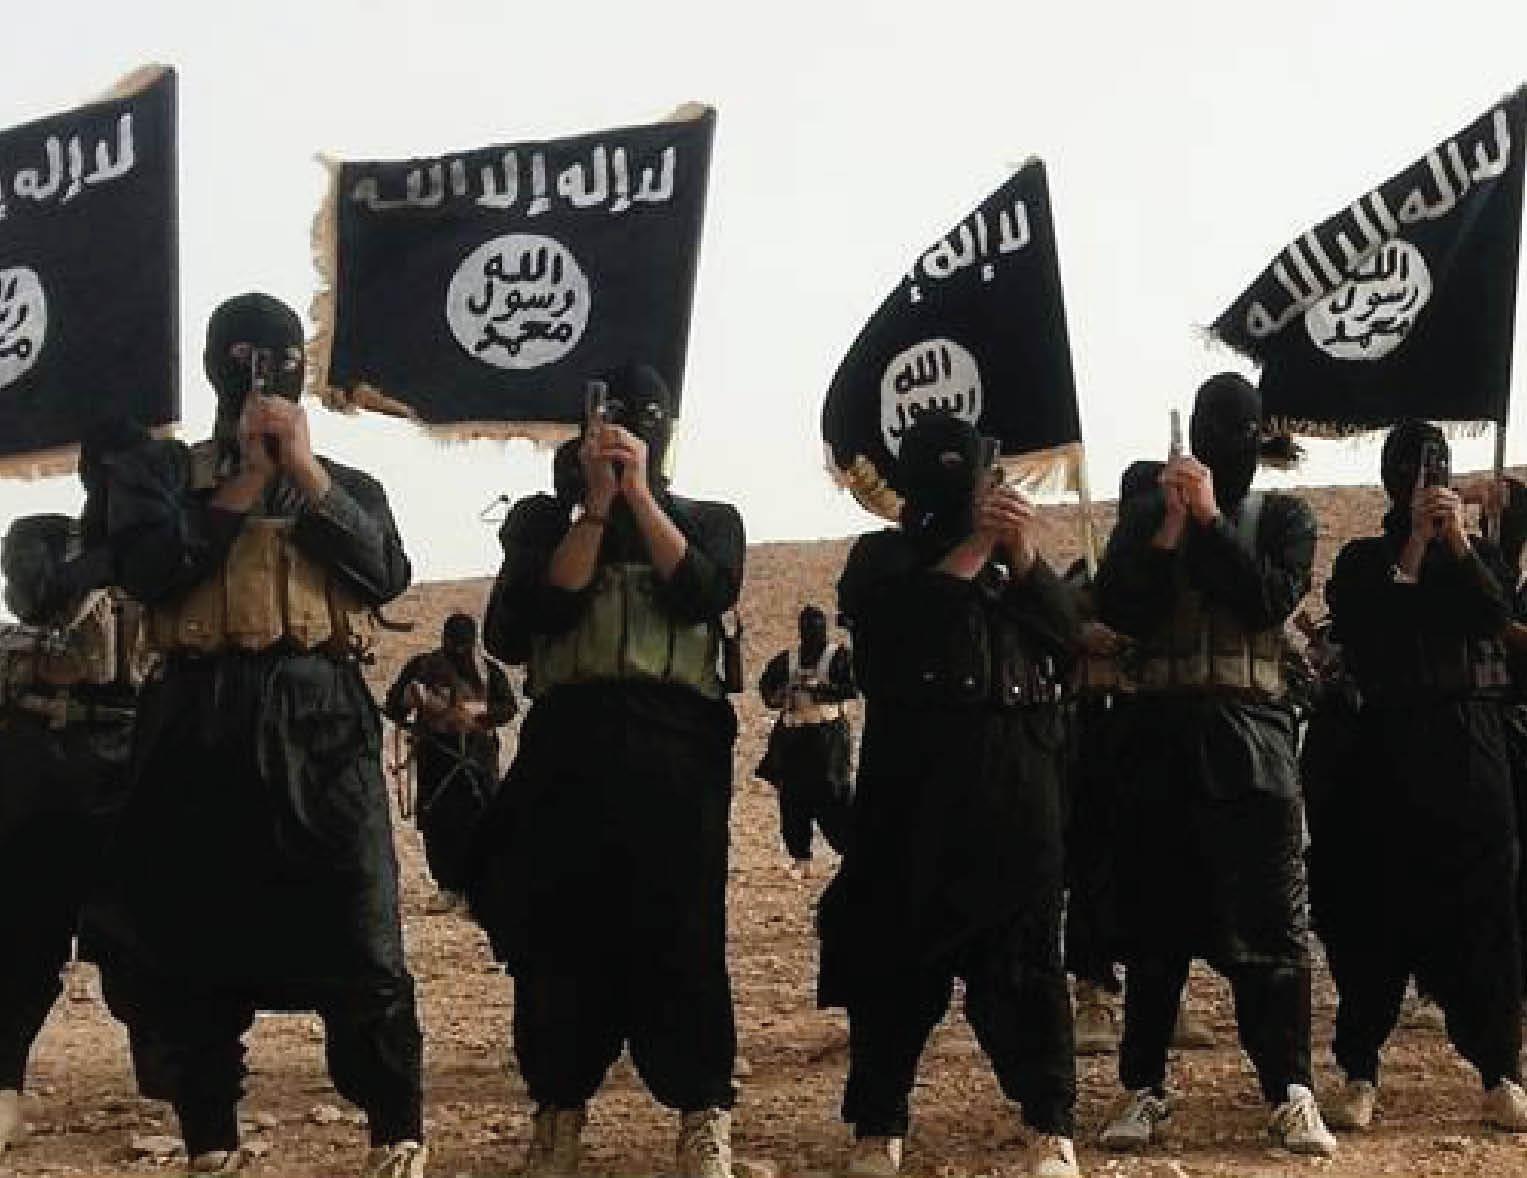 سقوط "الرمادي" في يد داعش نصر كبير لهم وهزيمة للعر